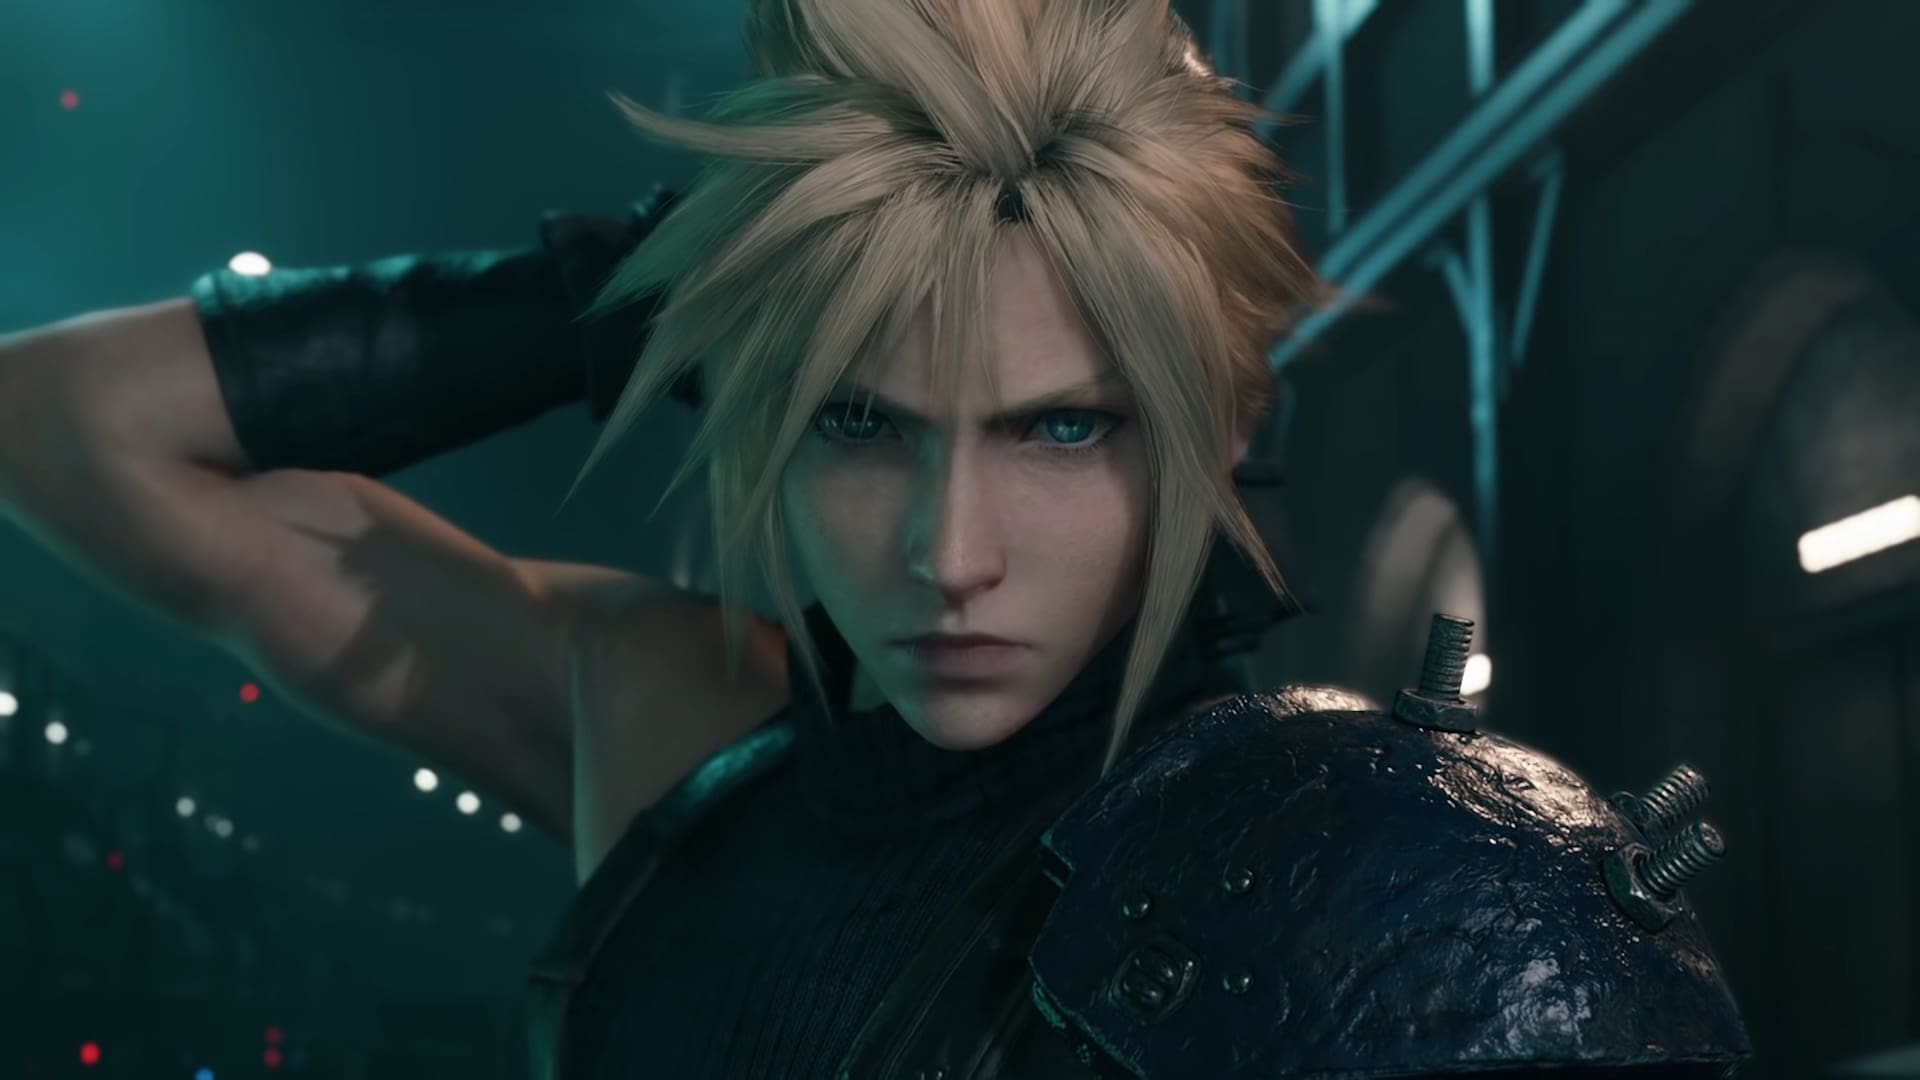 Final Fantasy VII Remake delayed to April